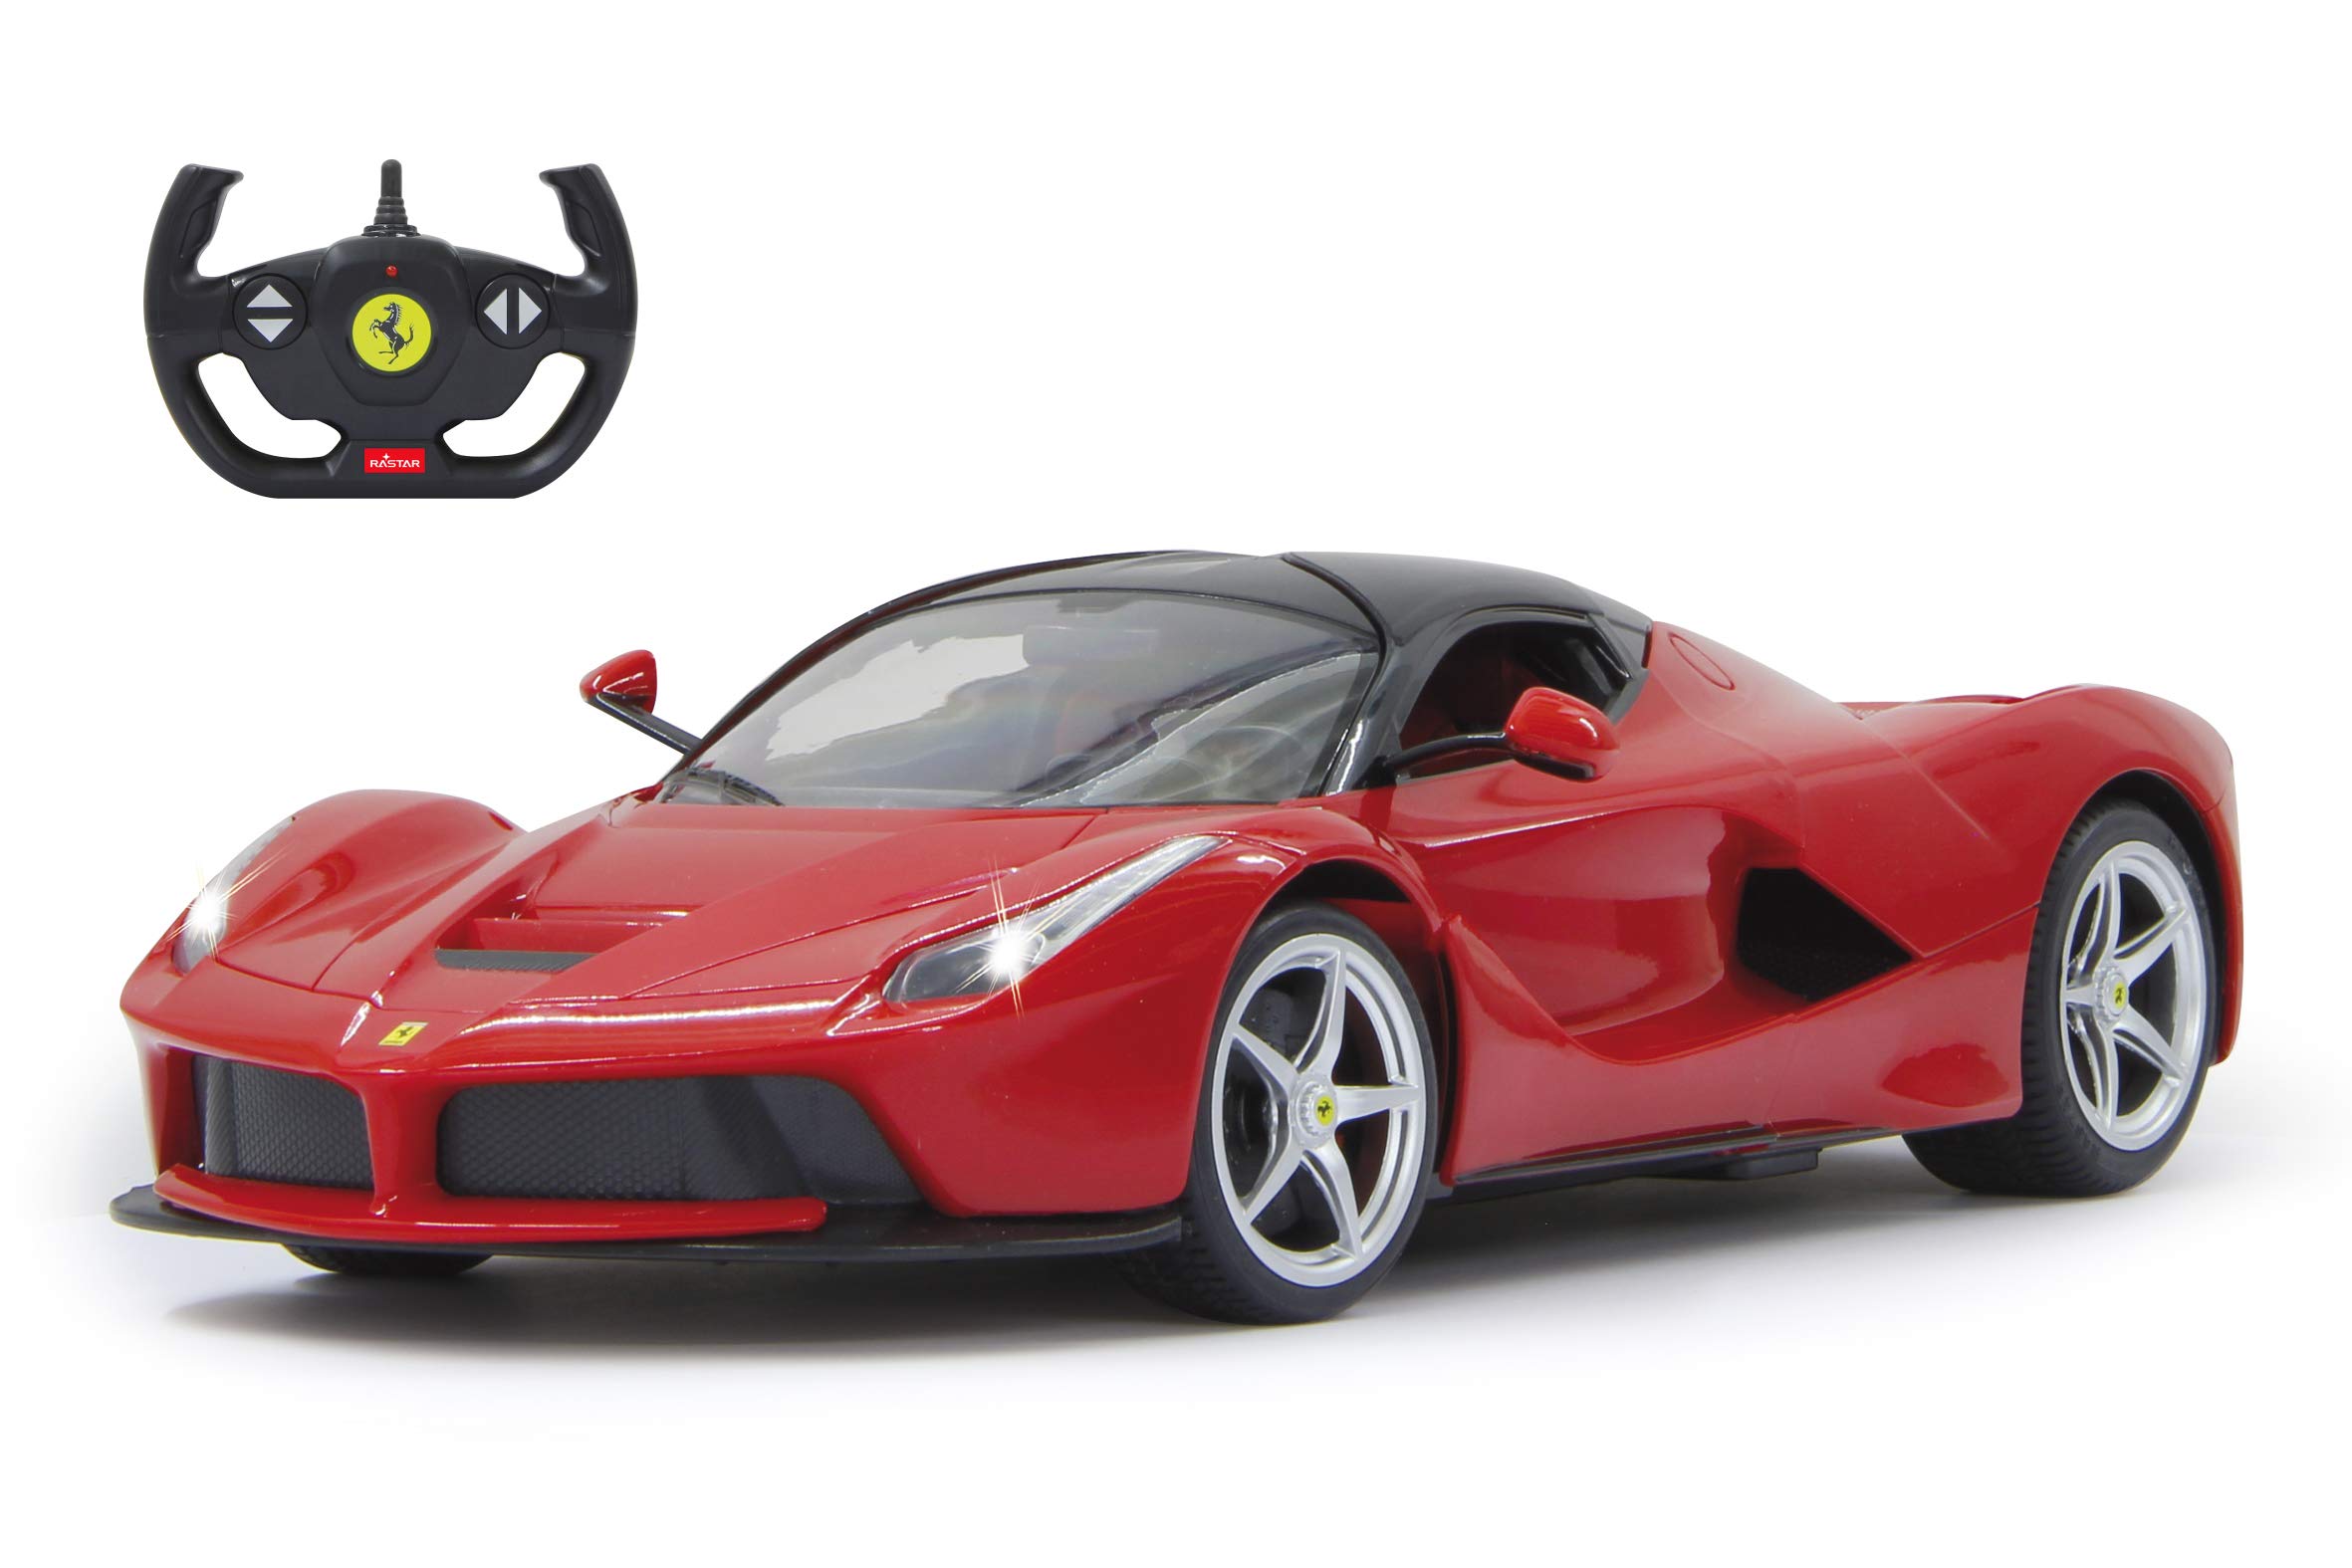 JAMARA 405021 - Ferrari La Ferrari 1:14 2,4GHz - Tür manuell & inkl. Akku - offiziell lizenziert, bis 1 Std Fahrzeit, ca 11 Kmh, detaillierter Innenraum, hochwertige Verarbeitung, LED Licht, Rot